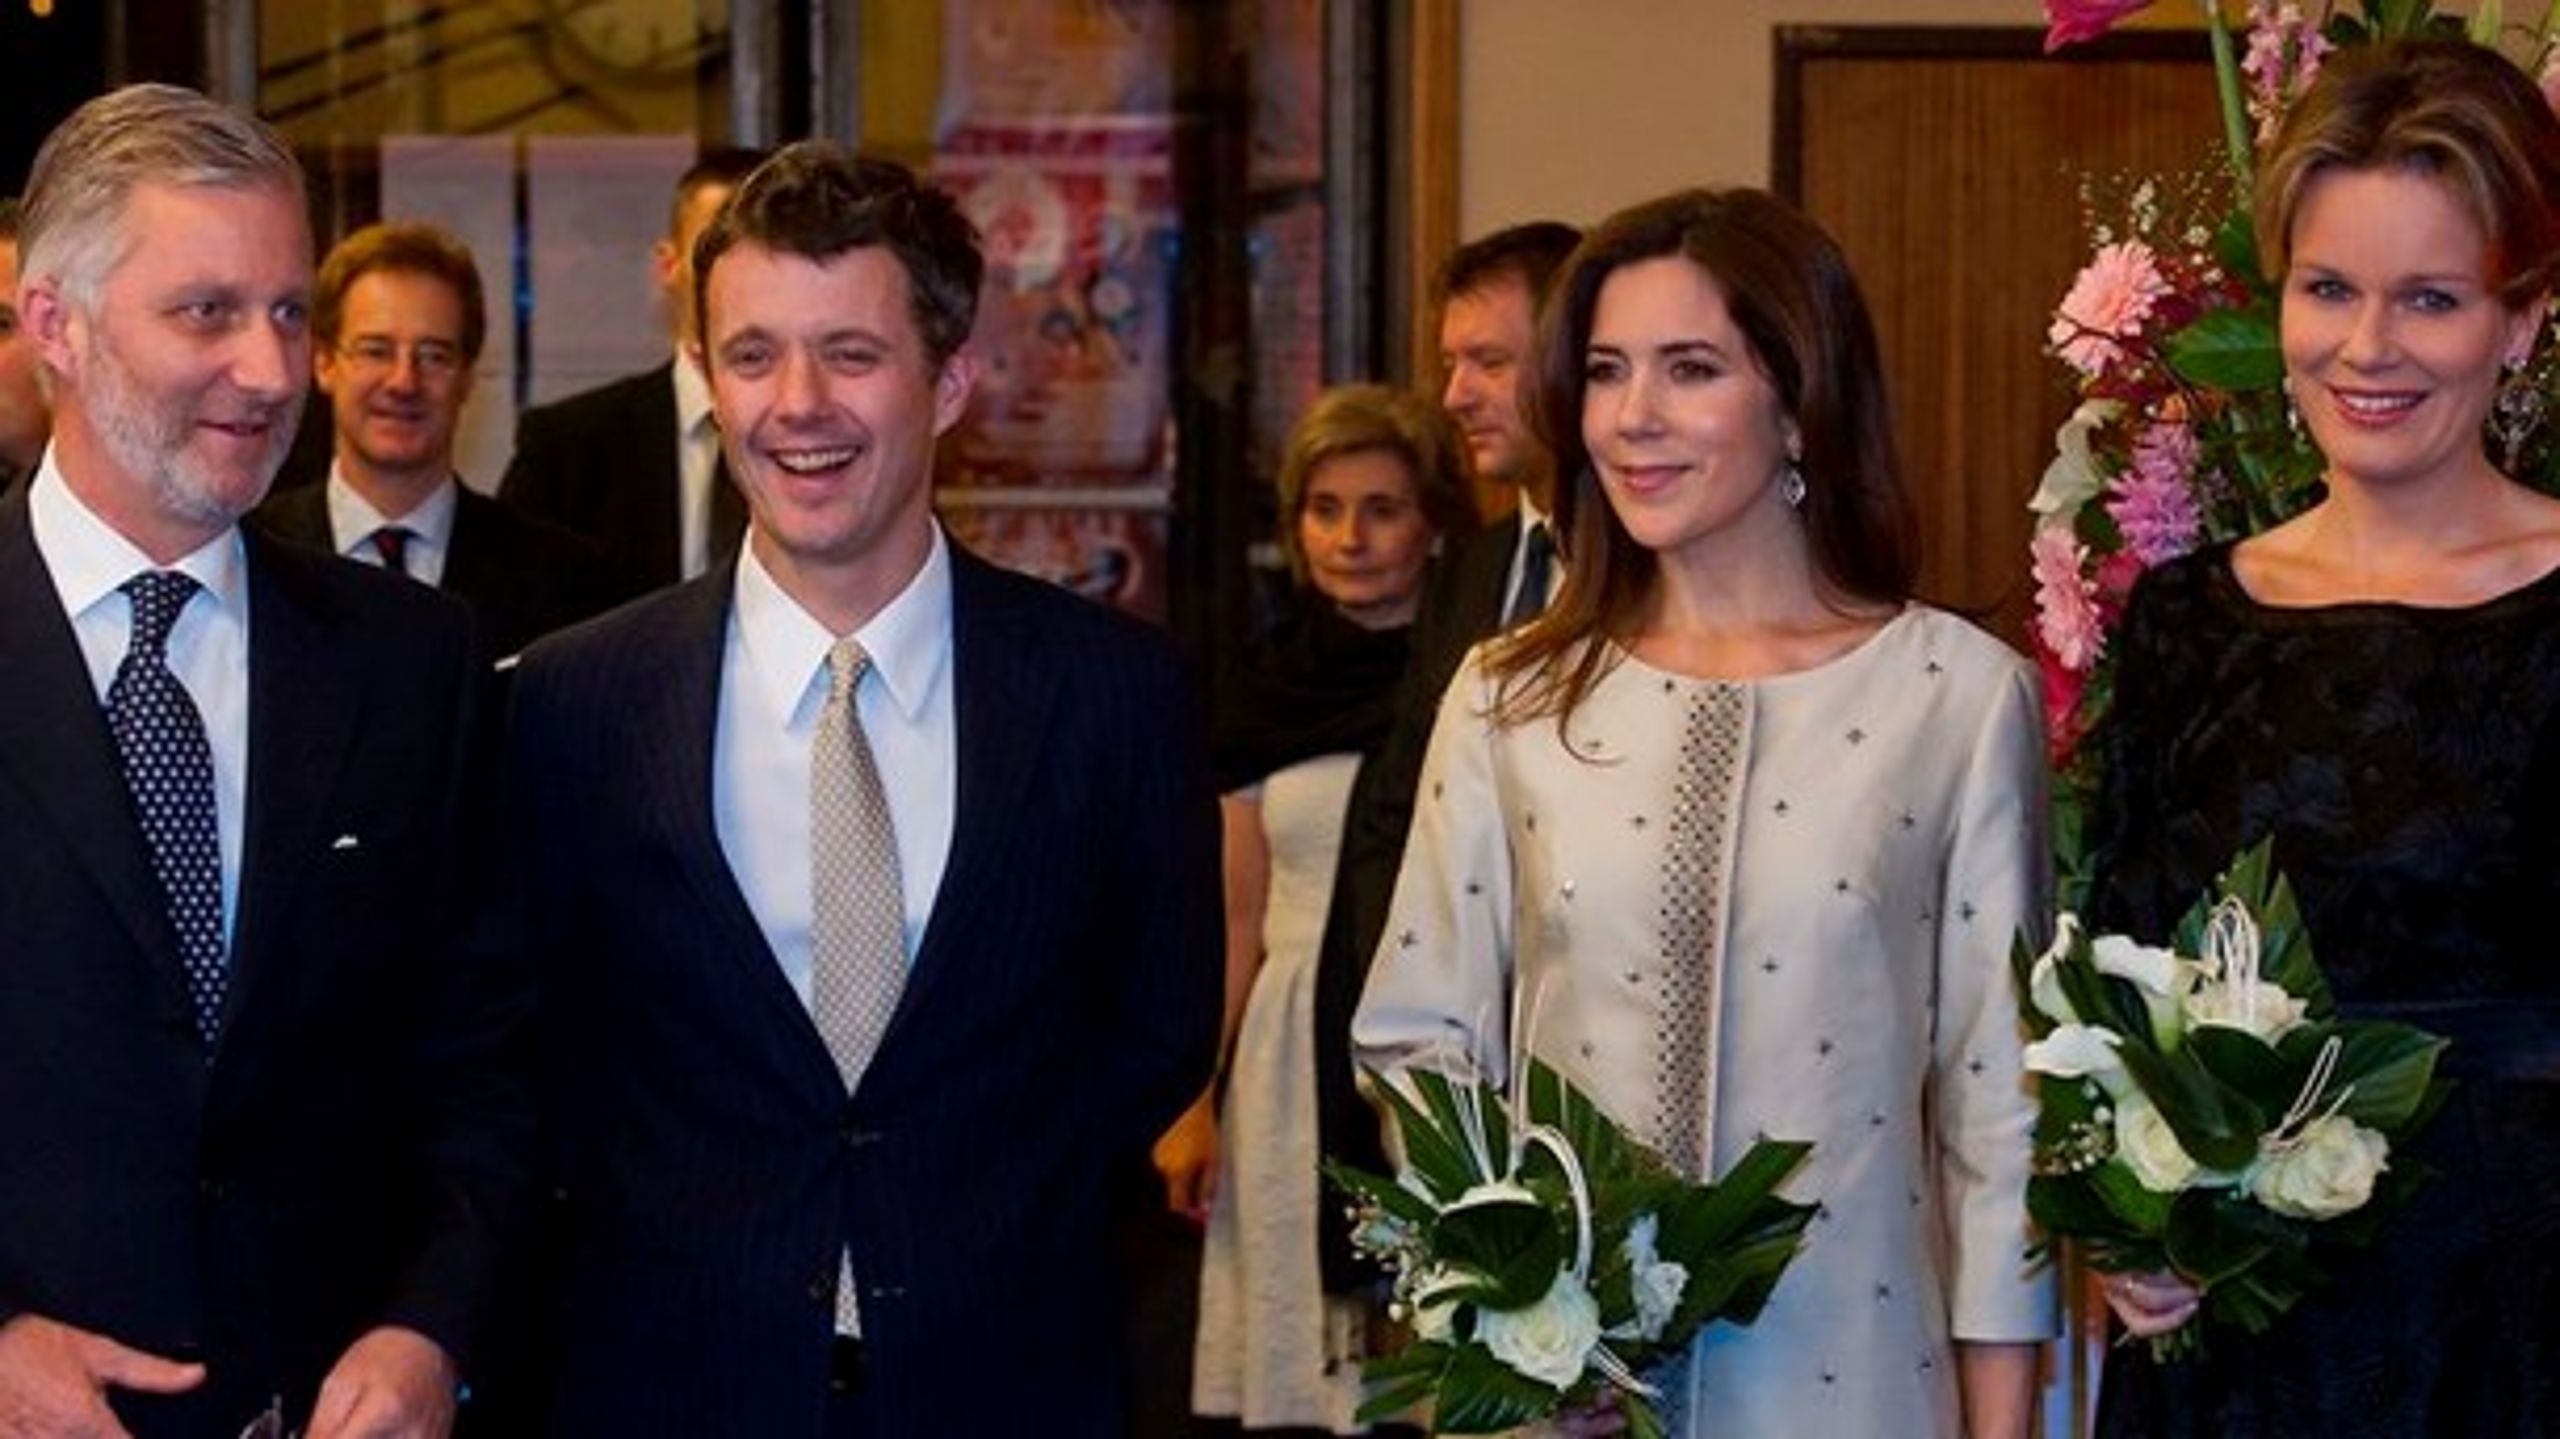 Kronprinsesse Mary gæster Bruxelles i denne uge. Det gjorde hun også ved&nbsp;åbningen af det danske EU-formandskab i 2012 i selskab med det belgiske kronprinspar, der siden har sat sig på tronen*.